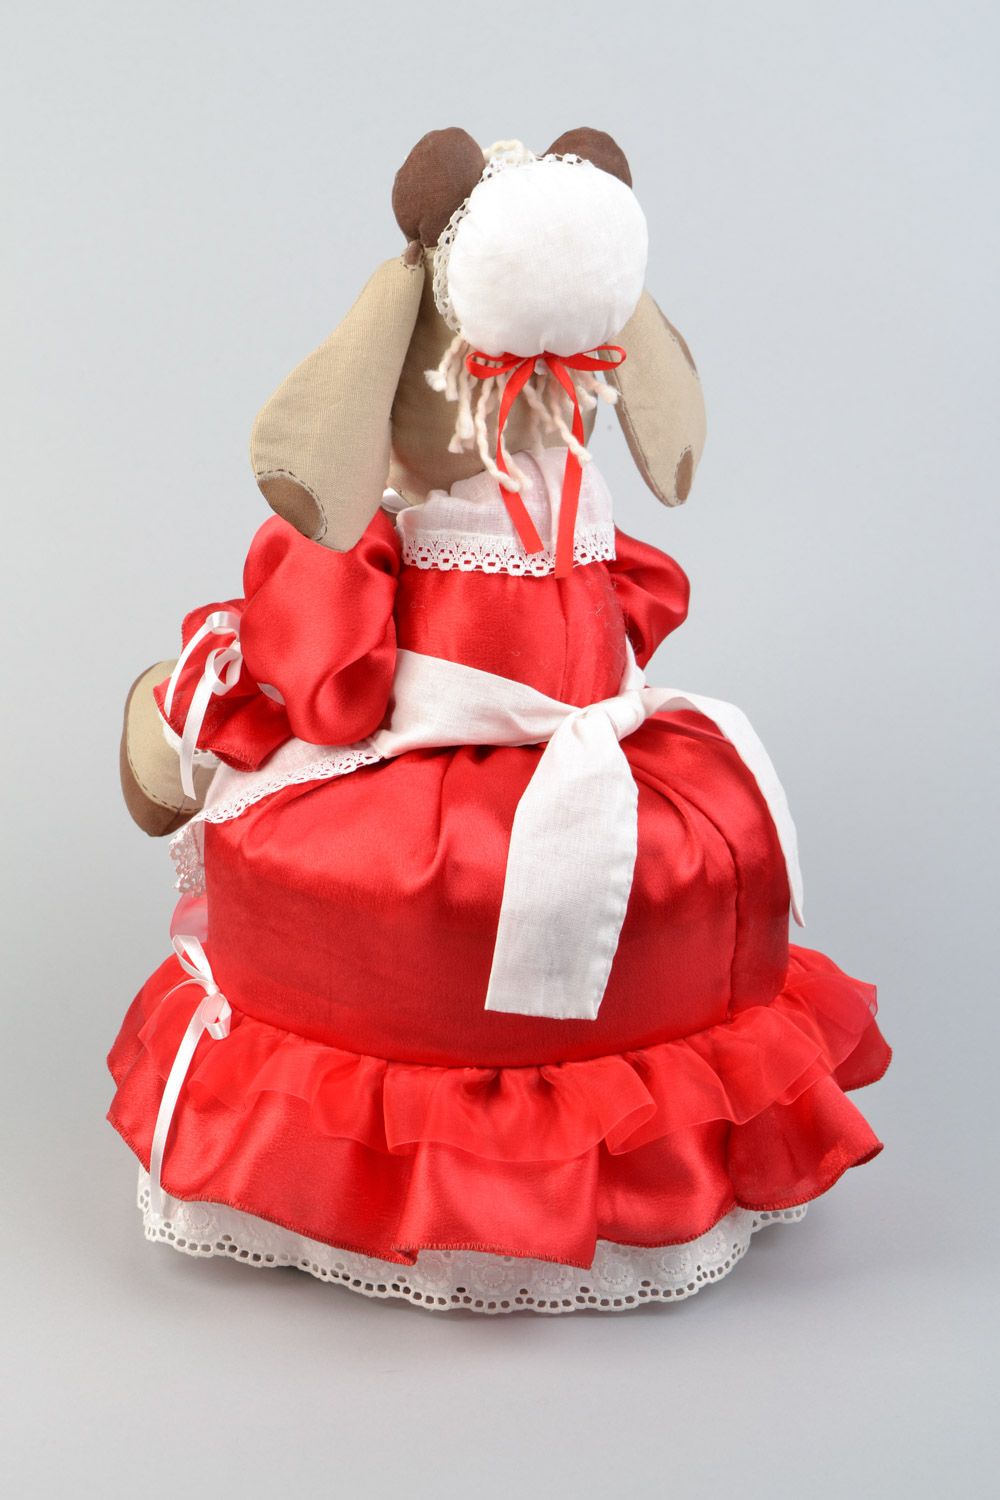 Origineller handmade Kannenwärmer aus Stoff Textil Puppe handmade in rotem Kleid Kuh foto 4